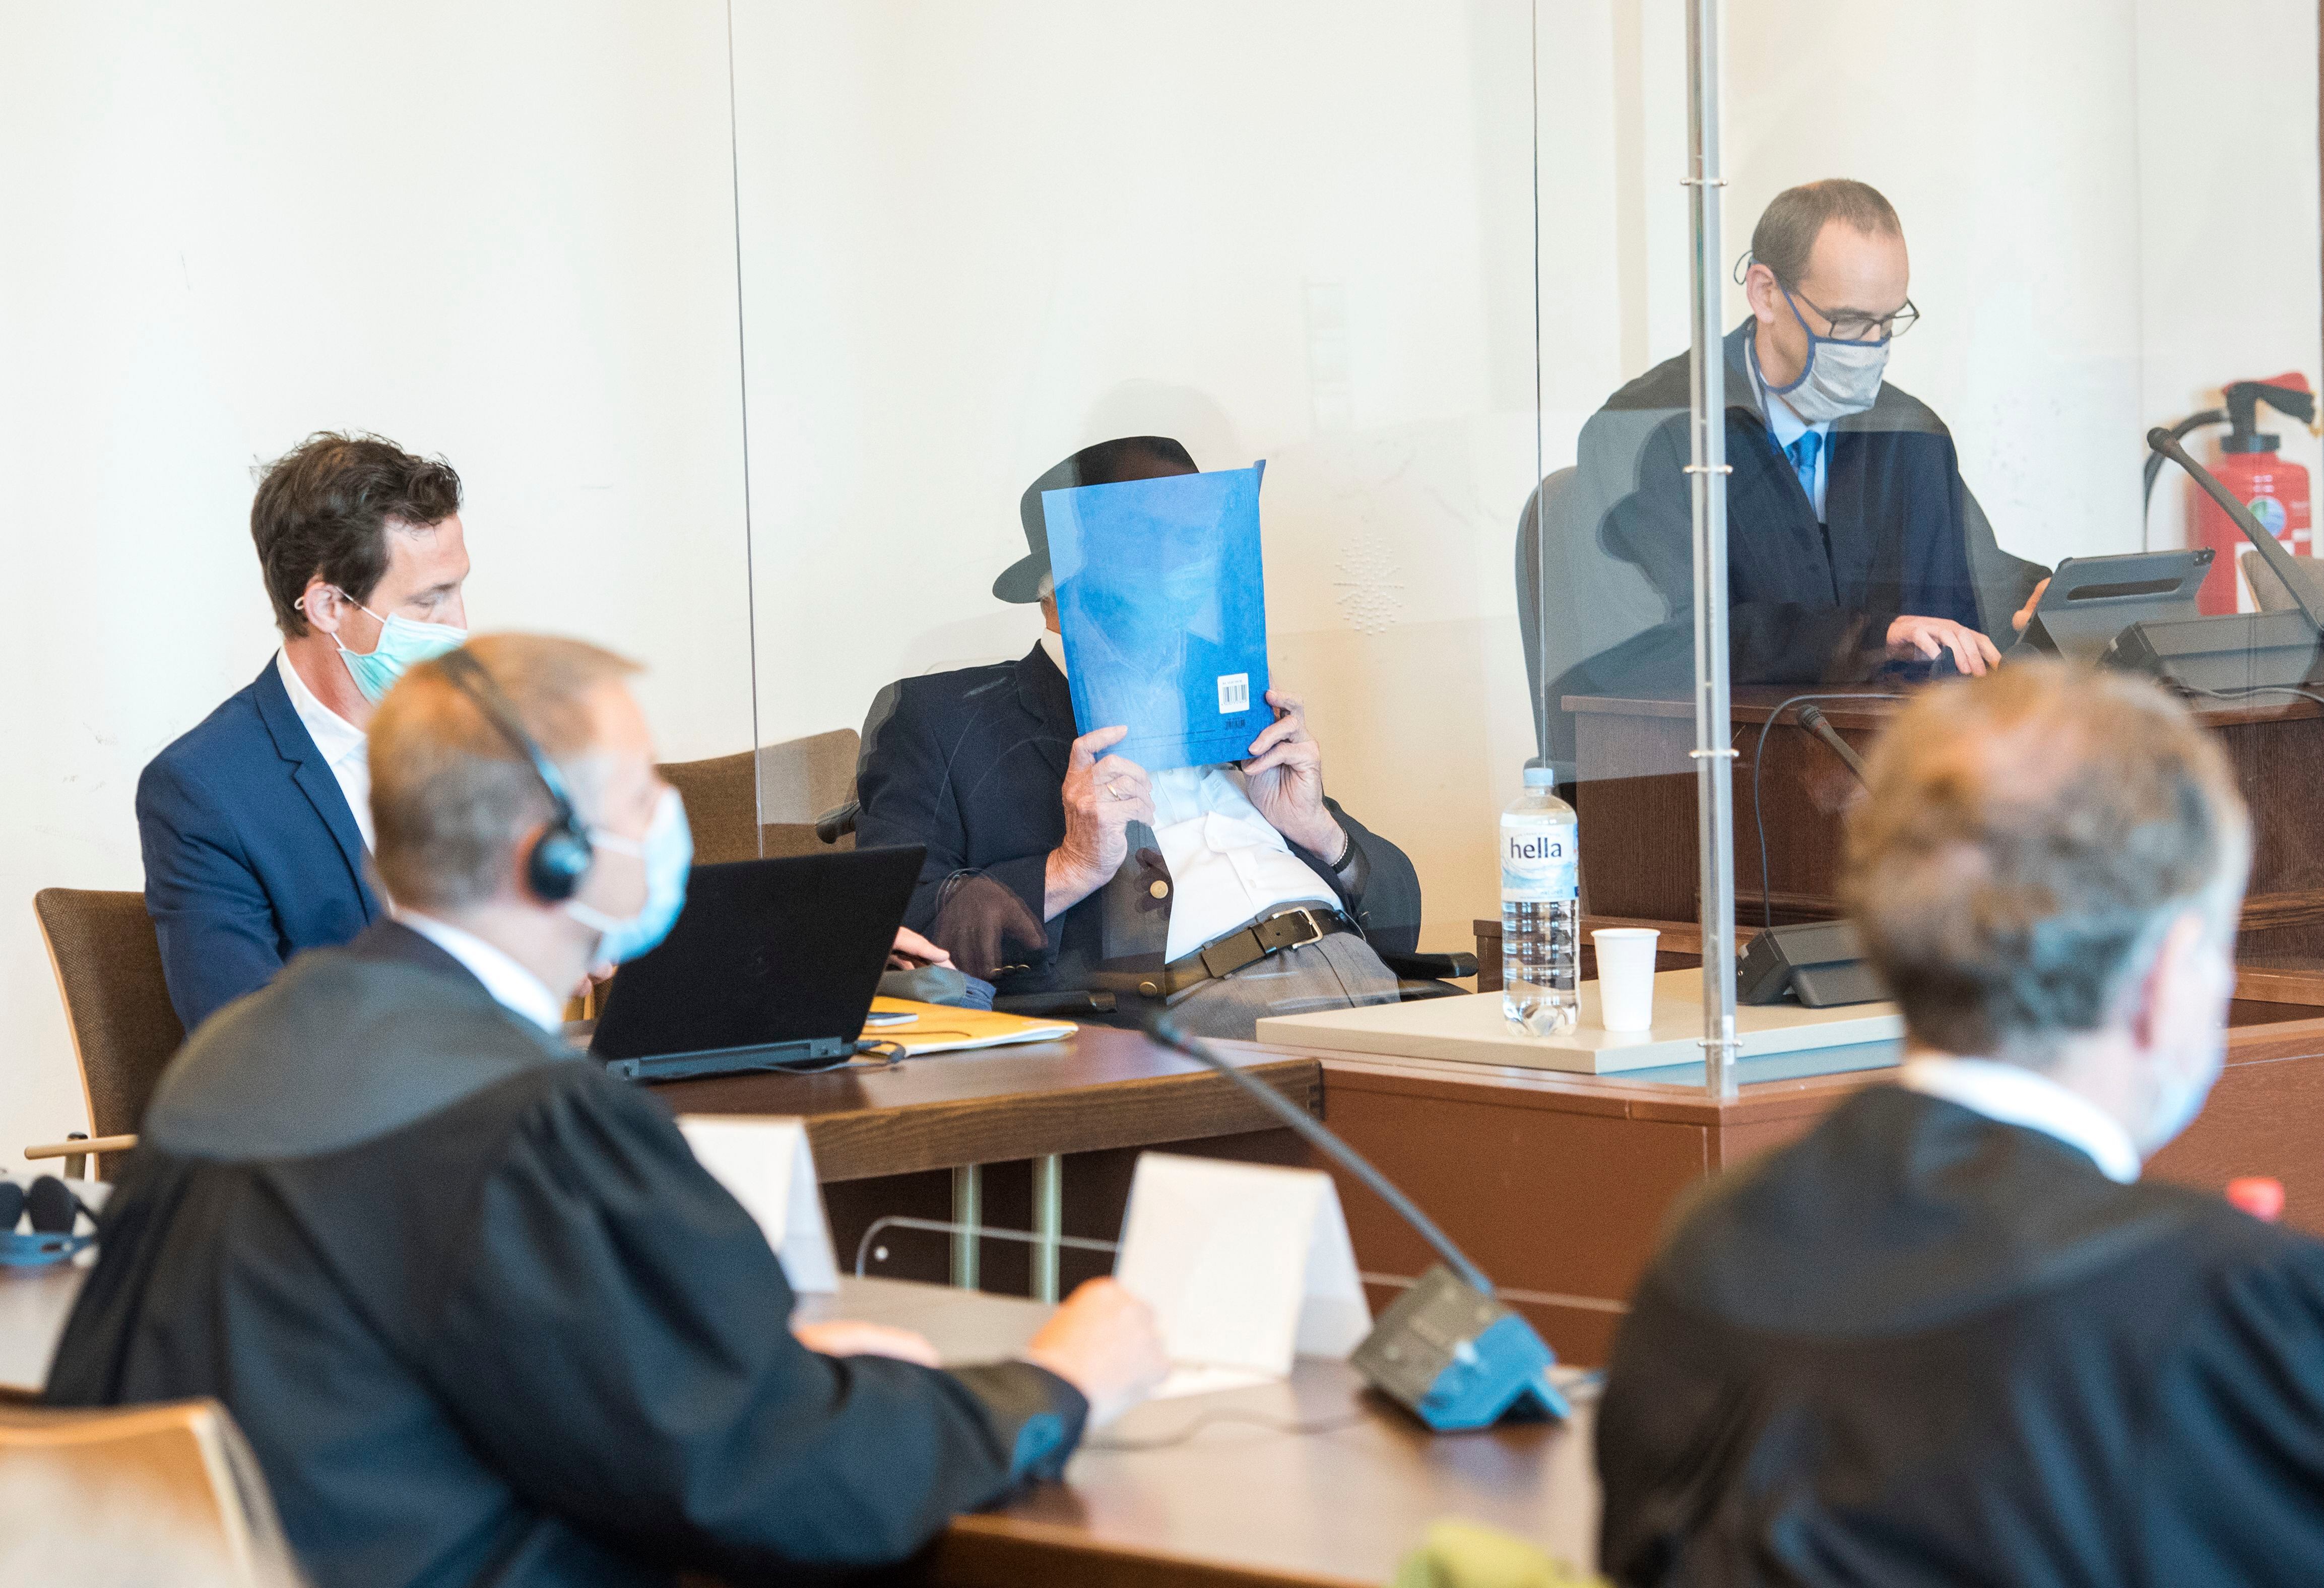 Bruno Dey, de 93 anos, esconde o rosto com uma pasta durante seu julgamento em Hamburgo. DANIEL BOCKWOLDT 